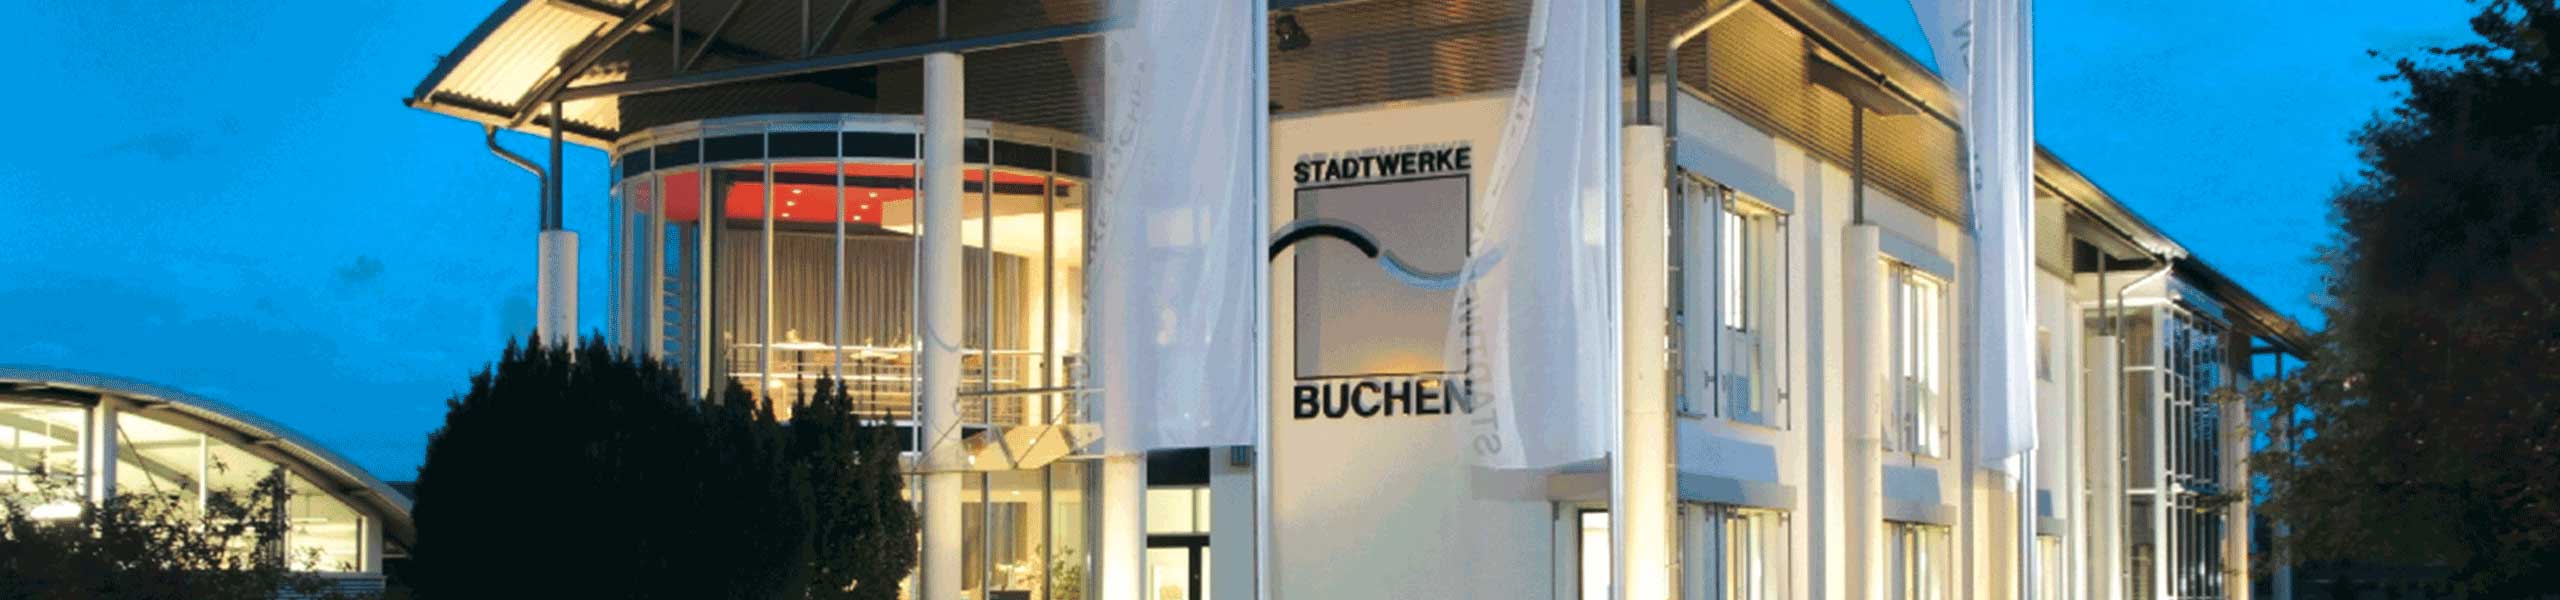 Stadtwerke Buchen GmbH & Co KG - Ihr Versorger vor Ort - swb.magazin 2022